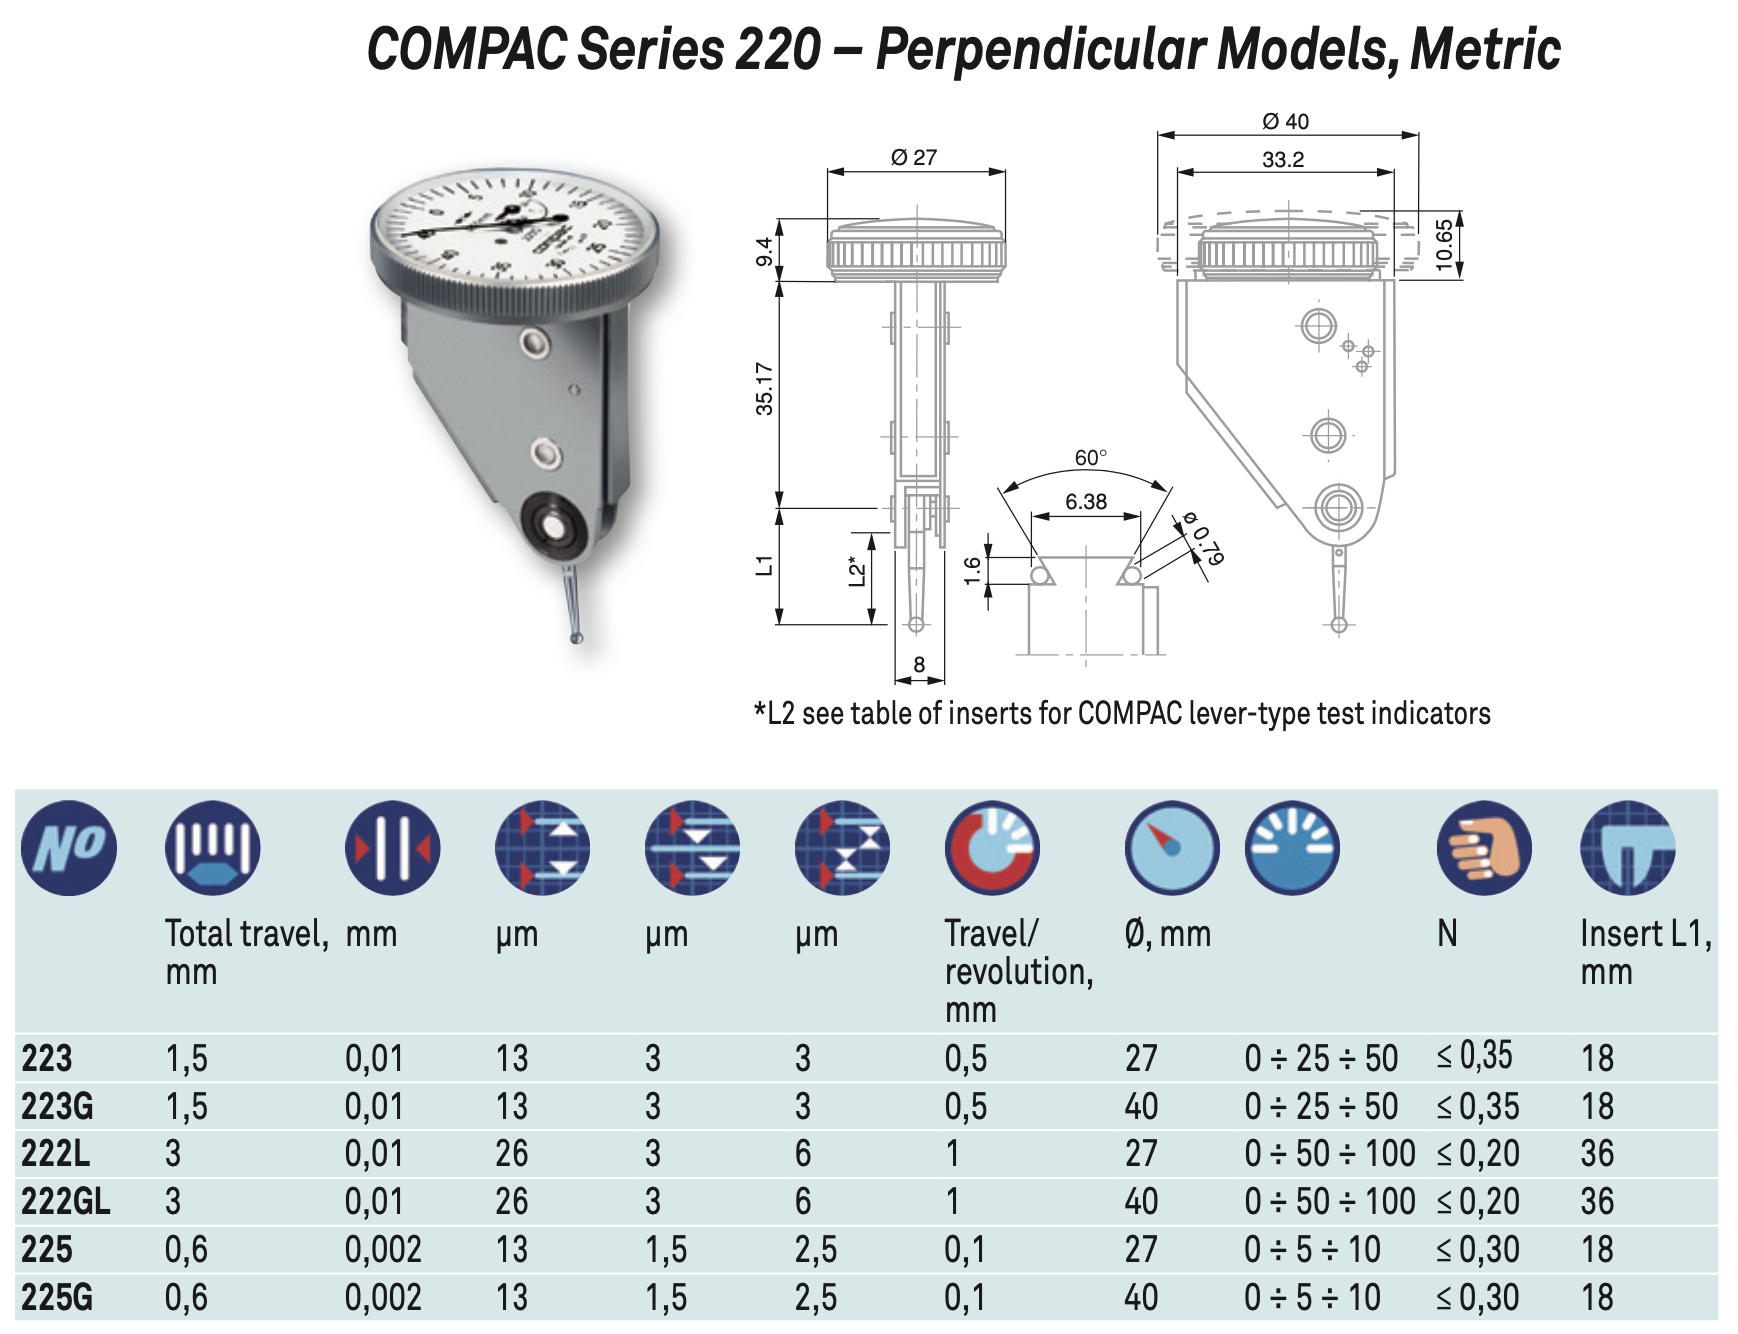 Compac metrci perpendicular models series 220